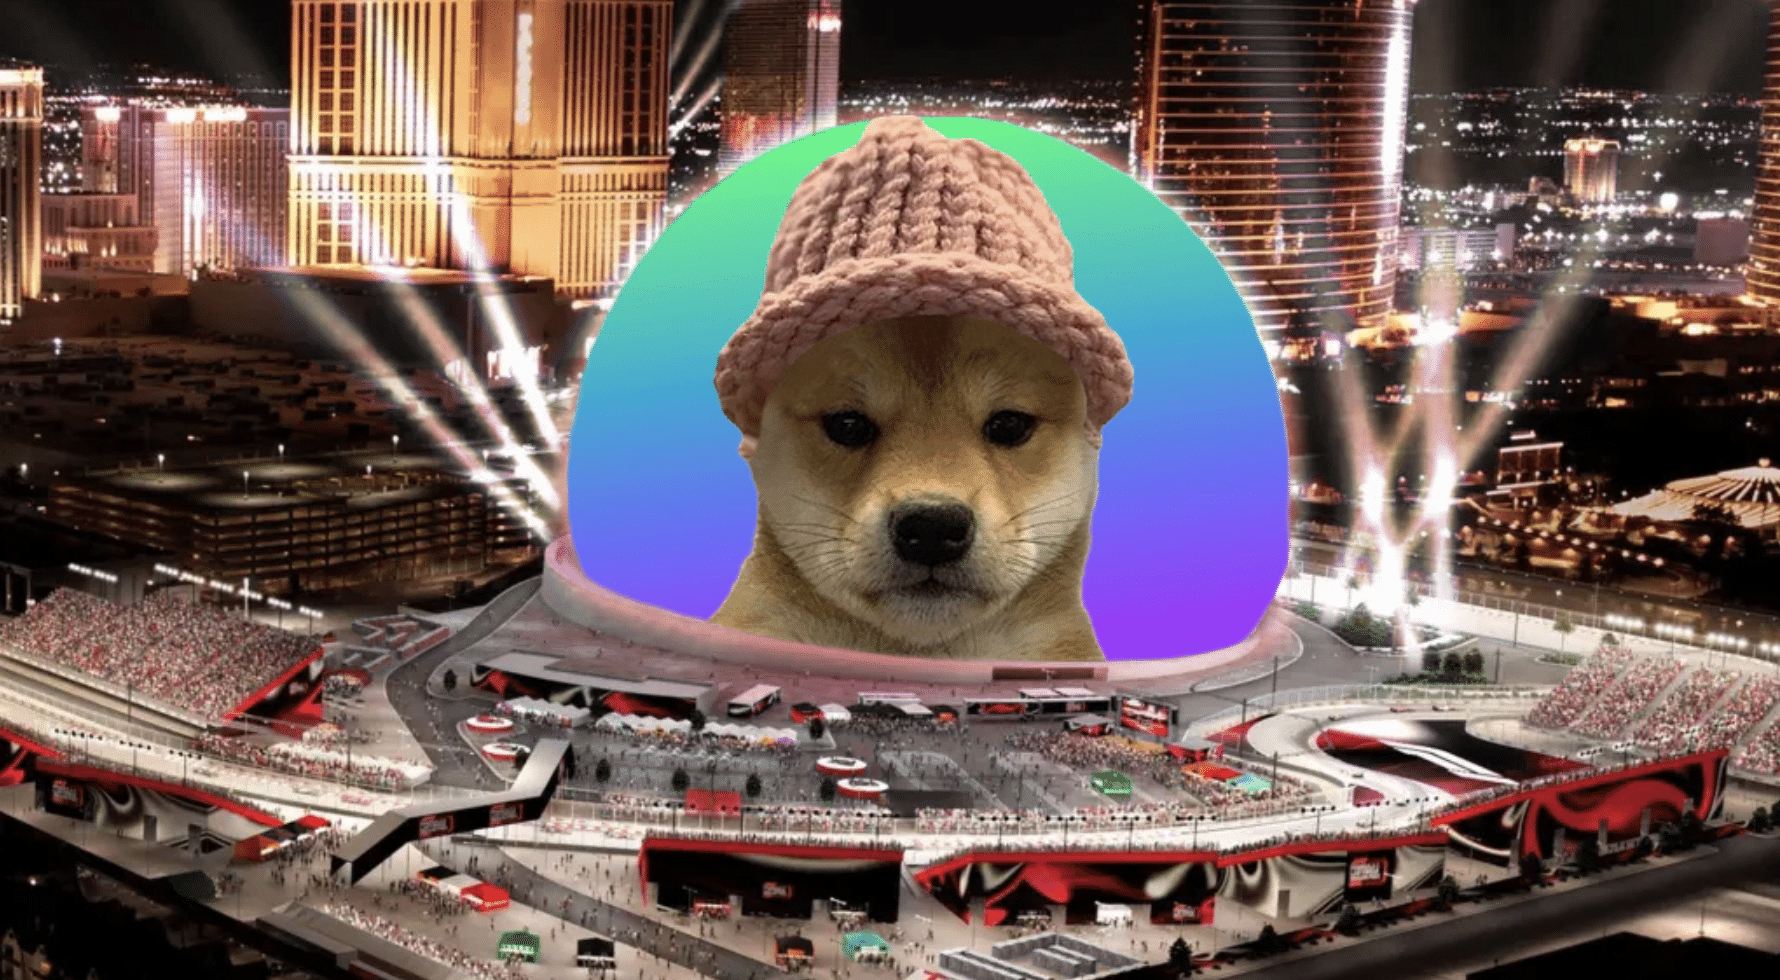 Una imagen editada con el meme Dogwifhat colocado en la Esfera de Las Vegas (https://wif-sphere.vercel.app/)